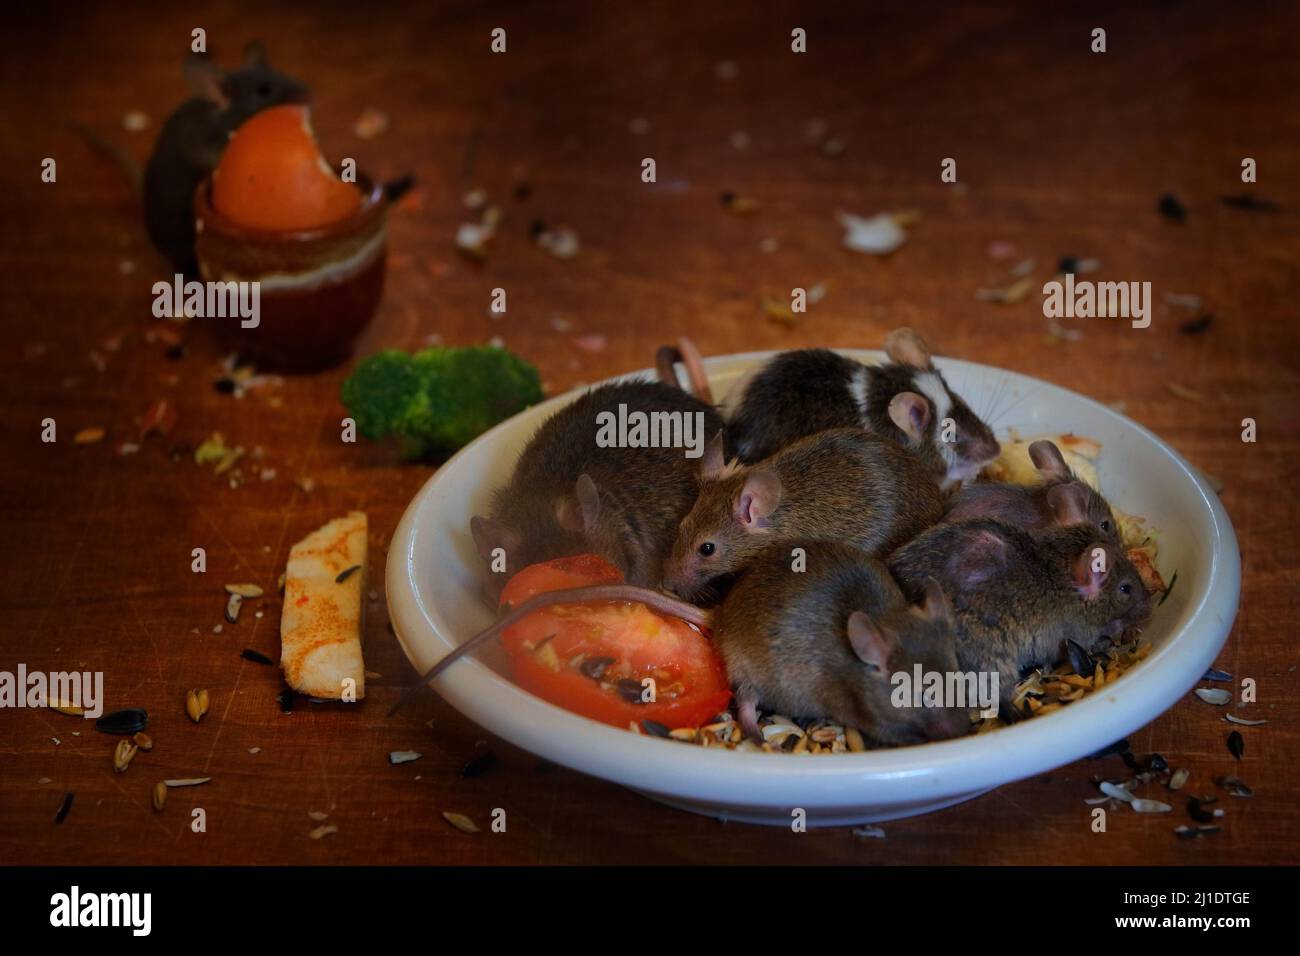 Maus an der Hausküche. Rattenmaus, Rattus norvegicus, isst Nahrung Rest Müll von schmutzigen Teller Geschirr, Tier bahaviour im Gebäude. Urbane Tierwelt i Stockfoto